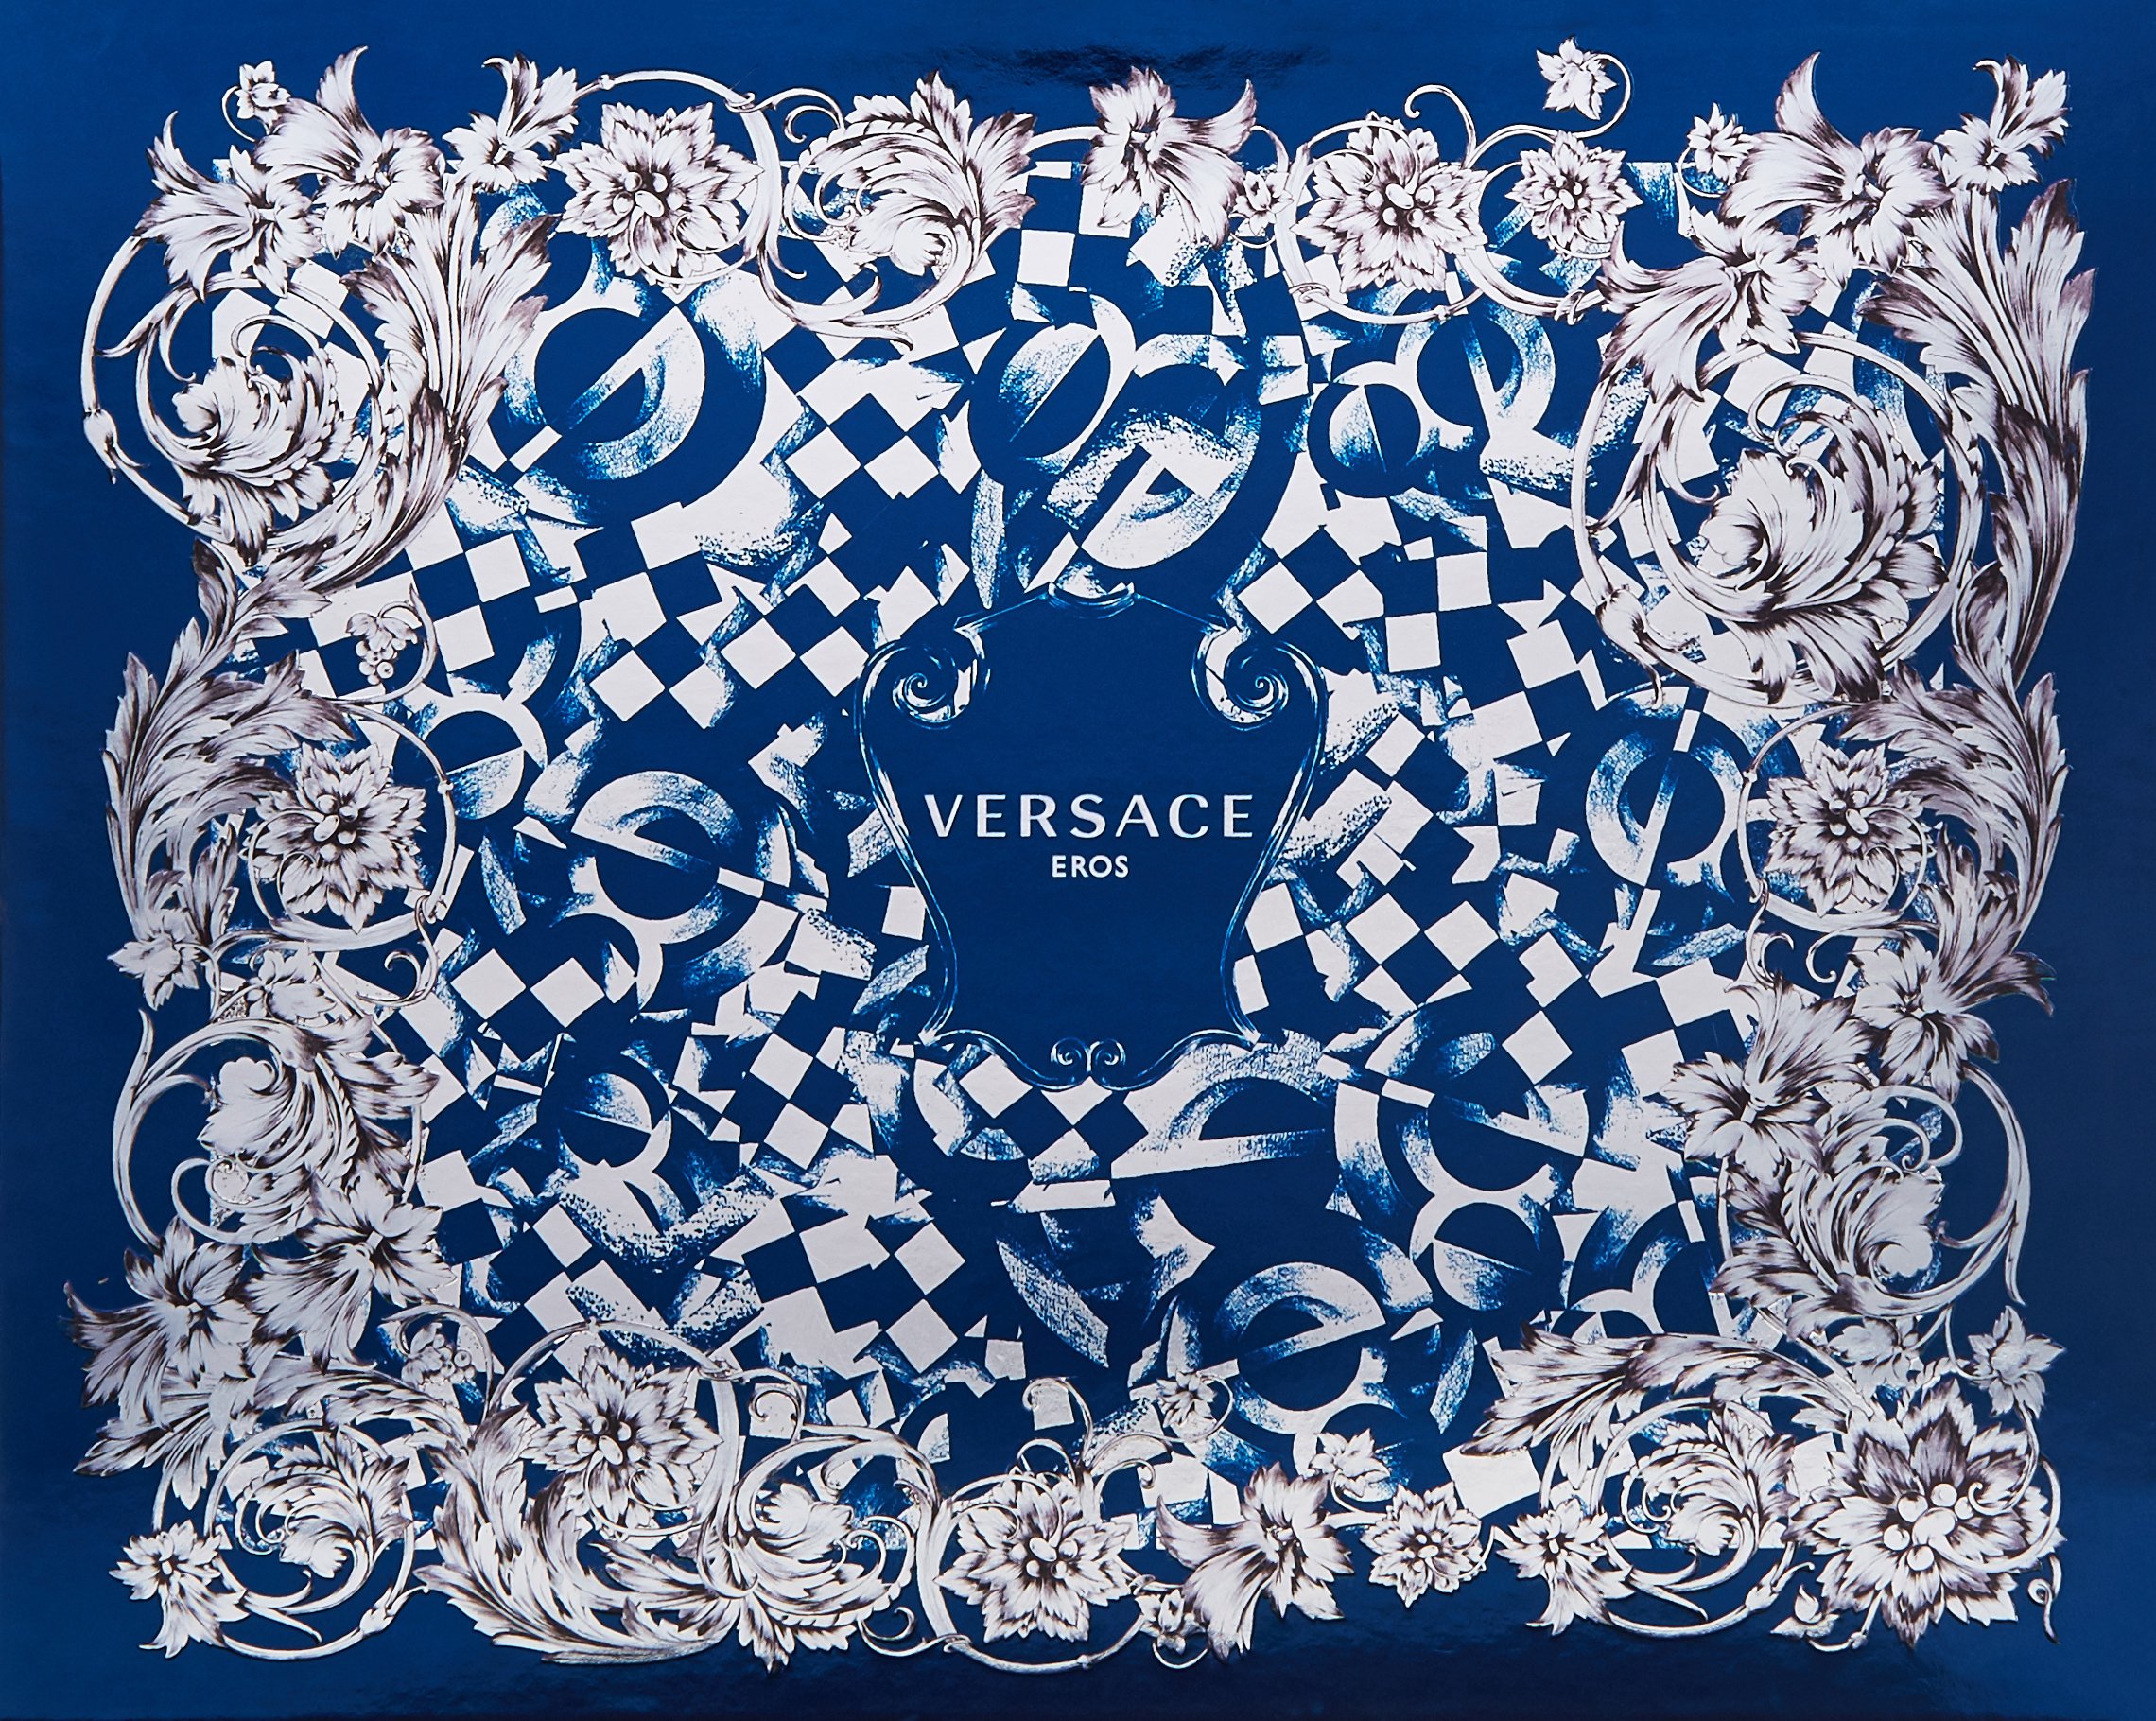 Versace EROS Gift Set for Men 1.7 oz EDT + 1.7 oz Shower Gel + 1.7 oz Aftershave Balm, Combo